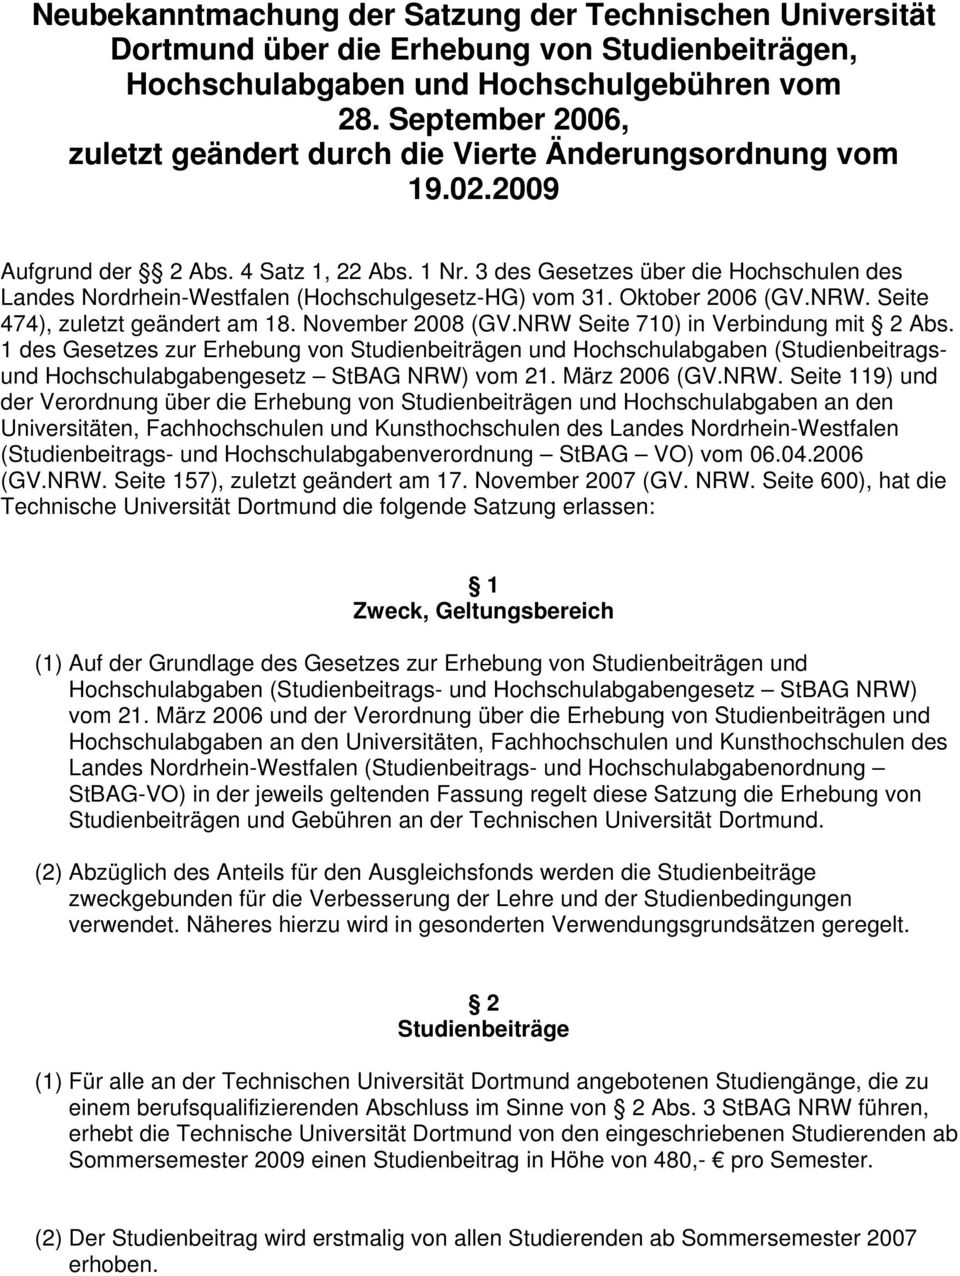 3 des Gesetzes über die Hochschulen des Landes Nordrhein-Westfalen (Hochschulgesetz-HG) vom 31. Oktober 2006 (GV.NRW. Seite 474), zuletzt geändert am 18. November 2008 (GV.